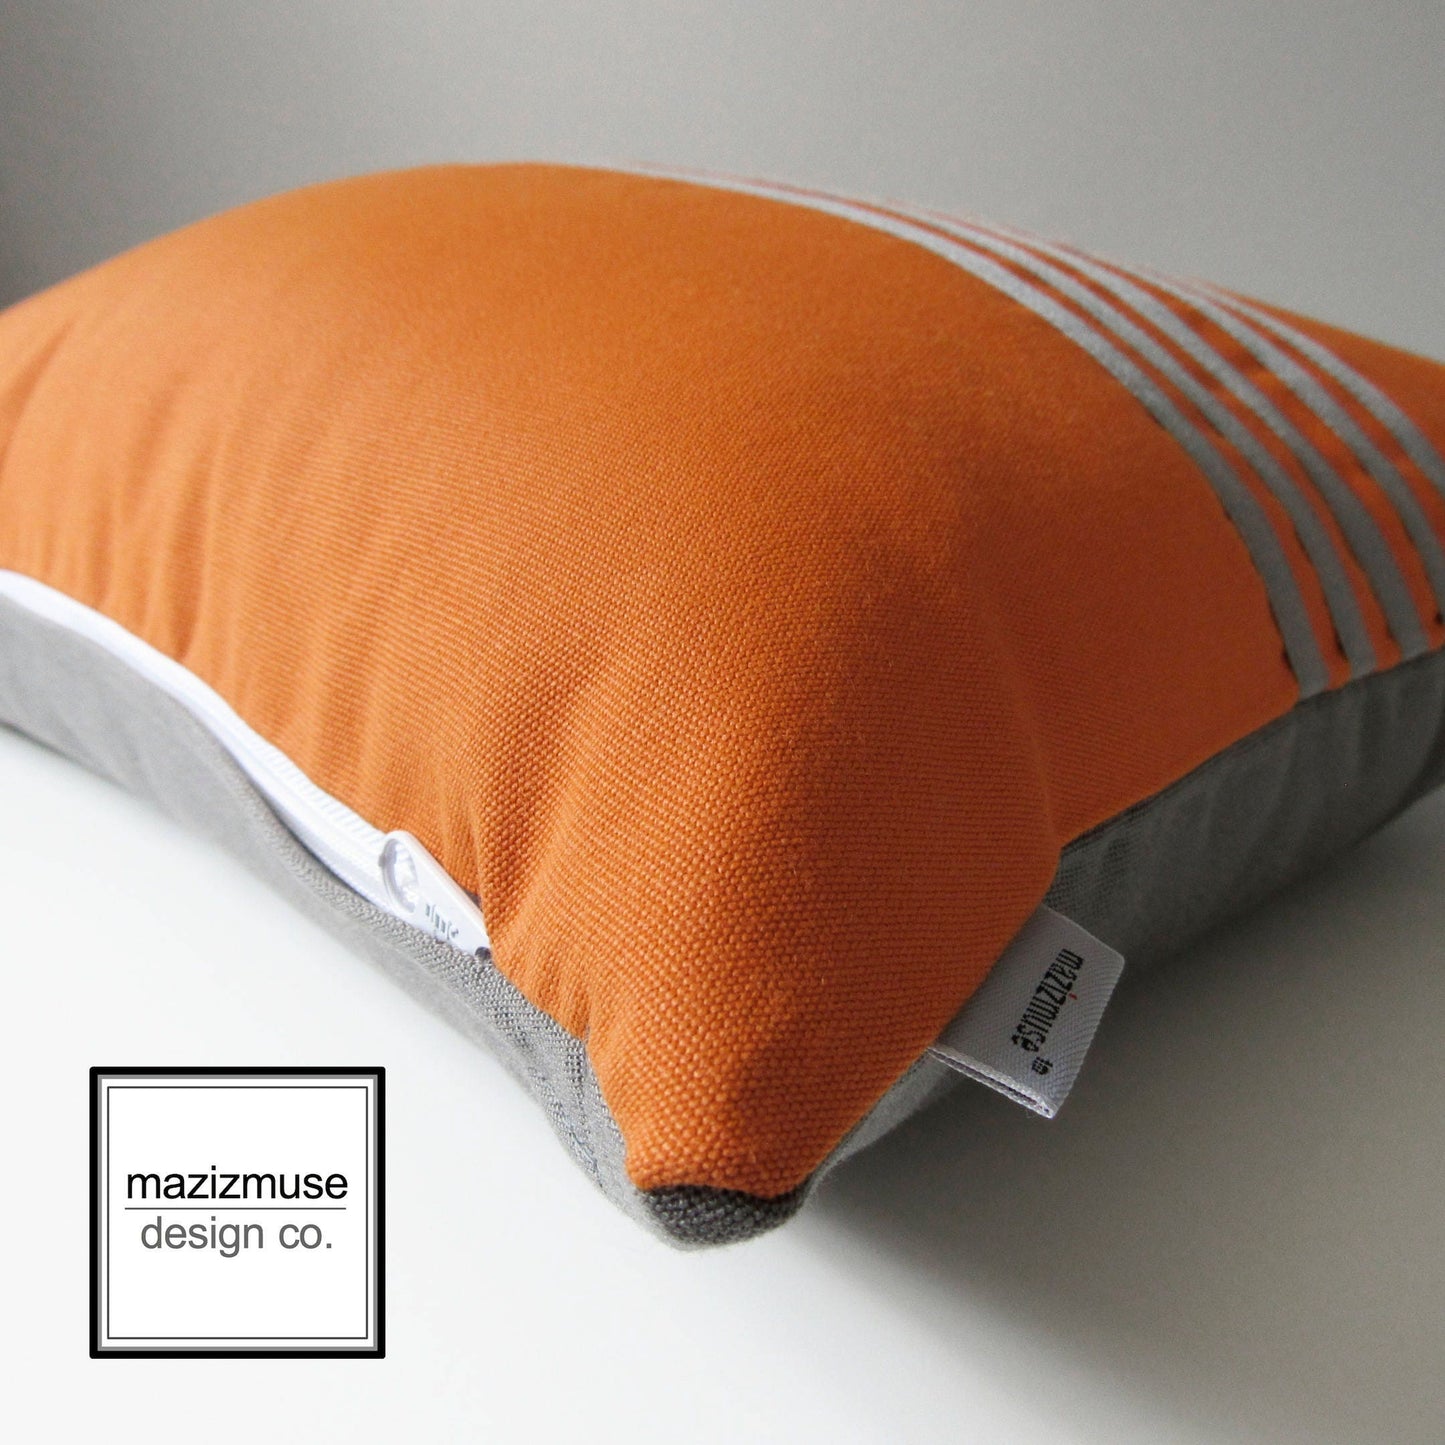 Decorative Grey & Orange Striped Sunbrella outdoor Cushion Cover